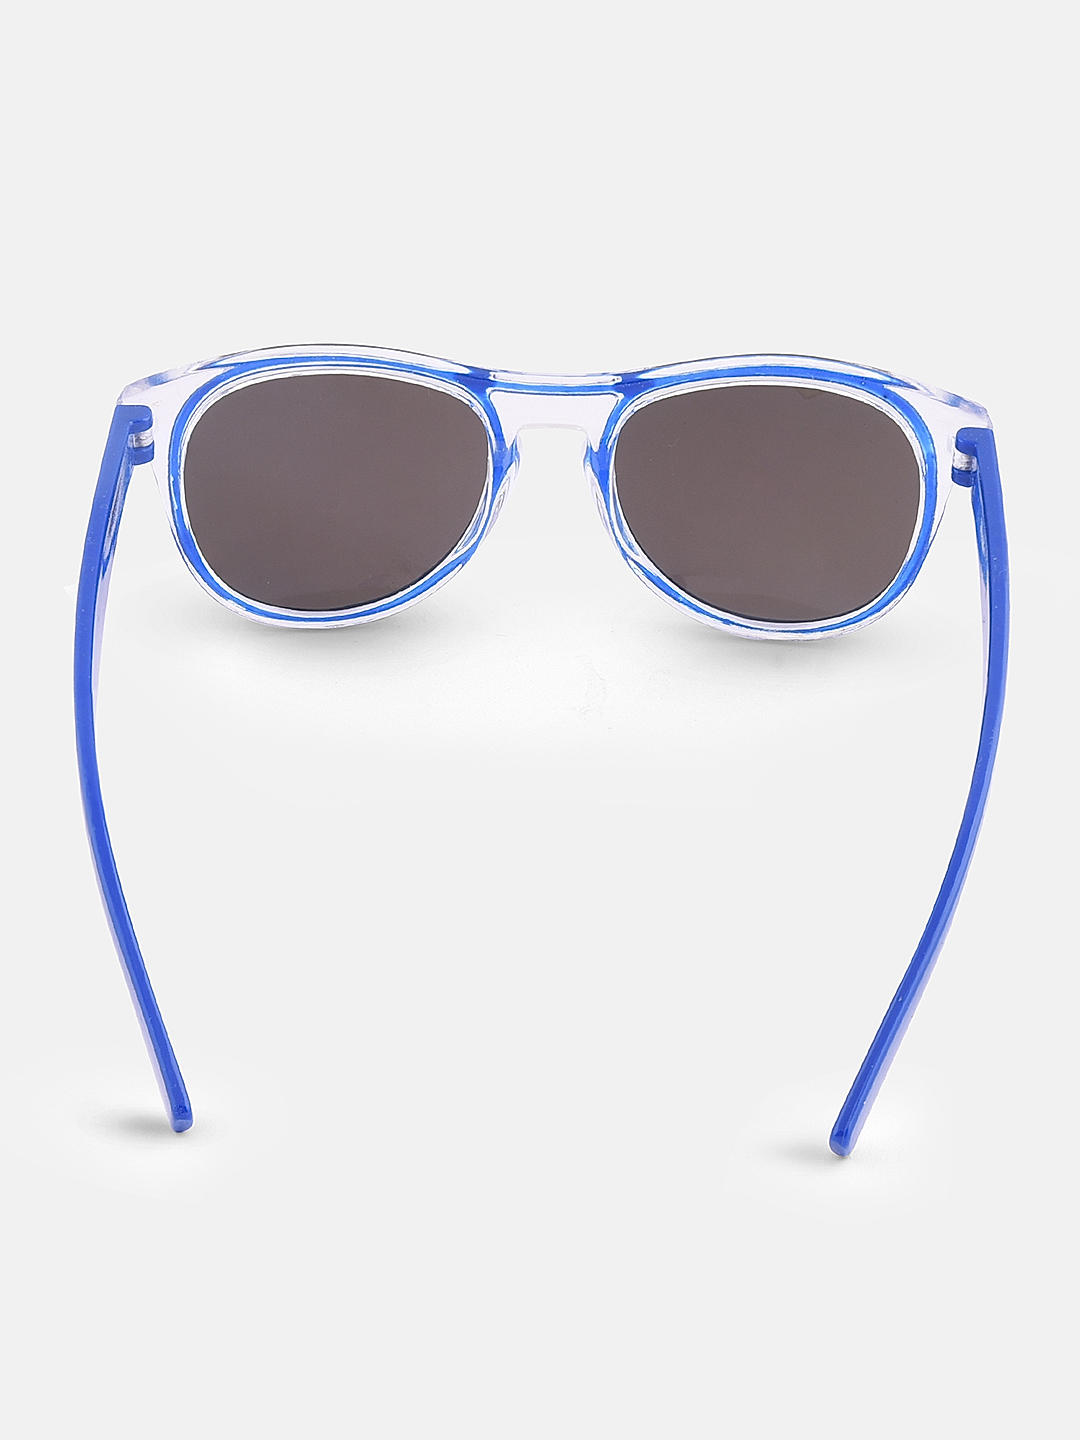 Kids Sunglasses 100% UV Protection for Girls Boys Baby Children Toddler Age  3-12 | eBay